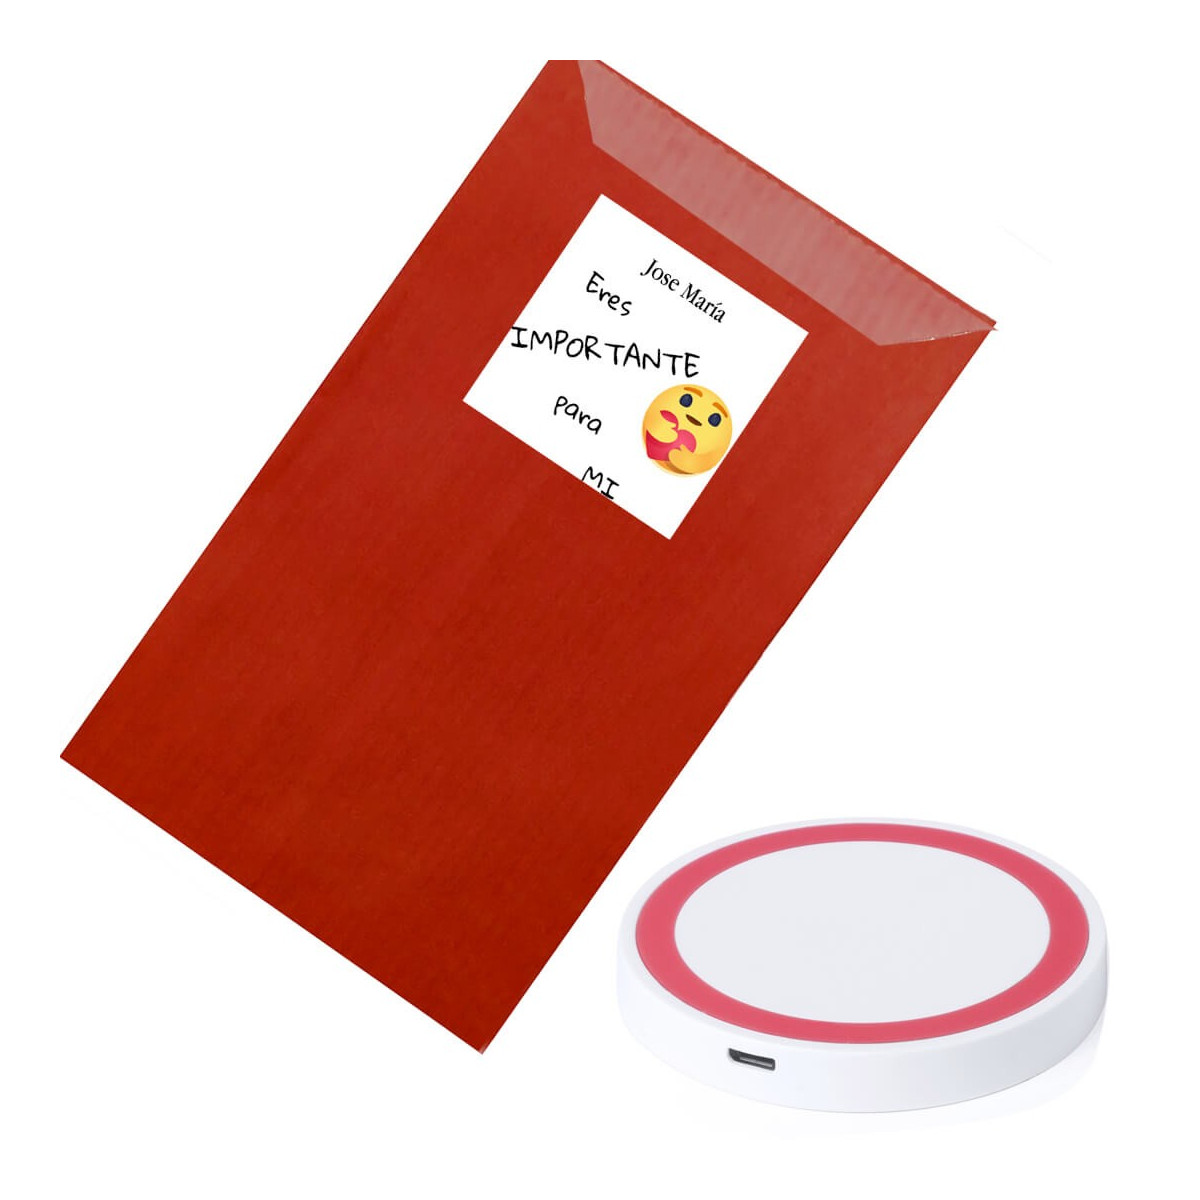 Chargeur sans fil sous enveloppe kraft rouge personnalisée avec adhésif tu es important pour moi